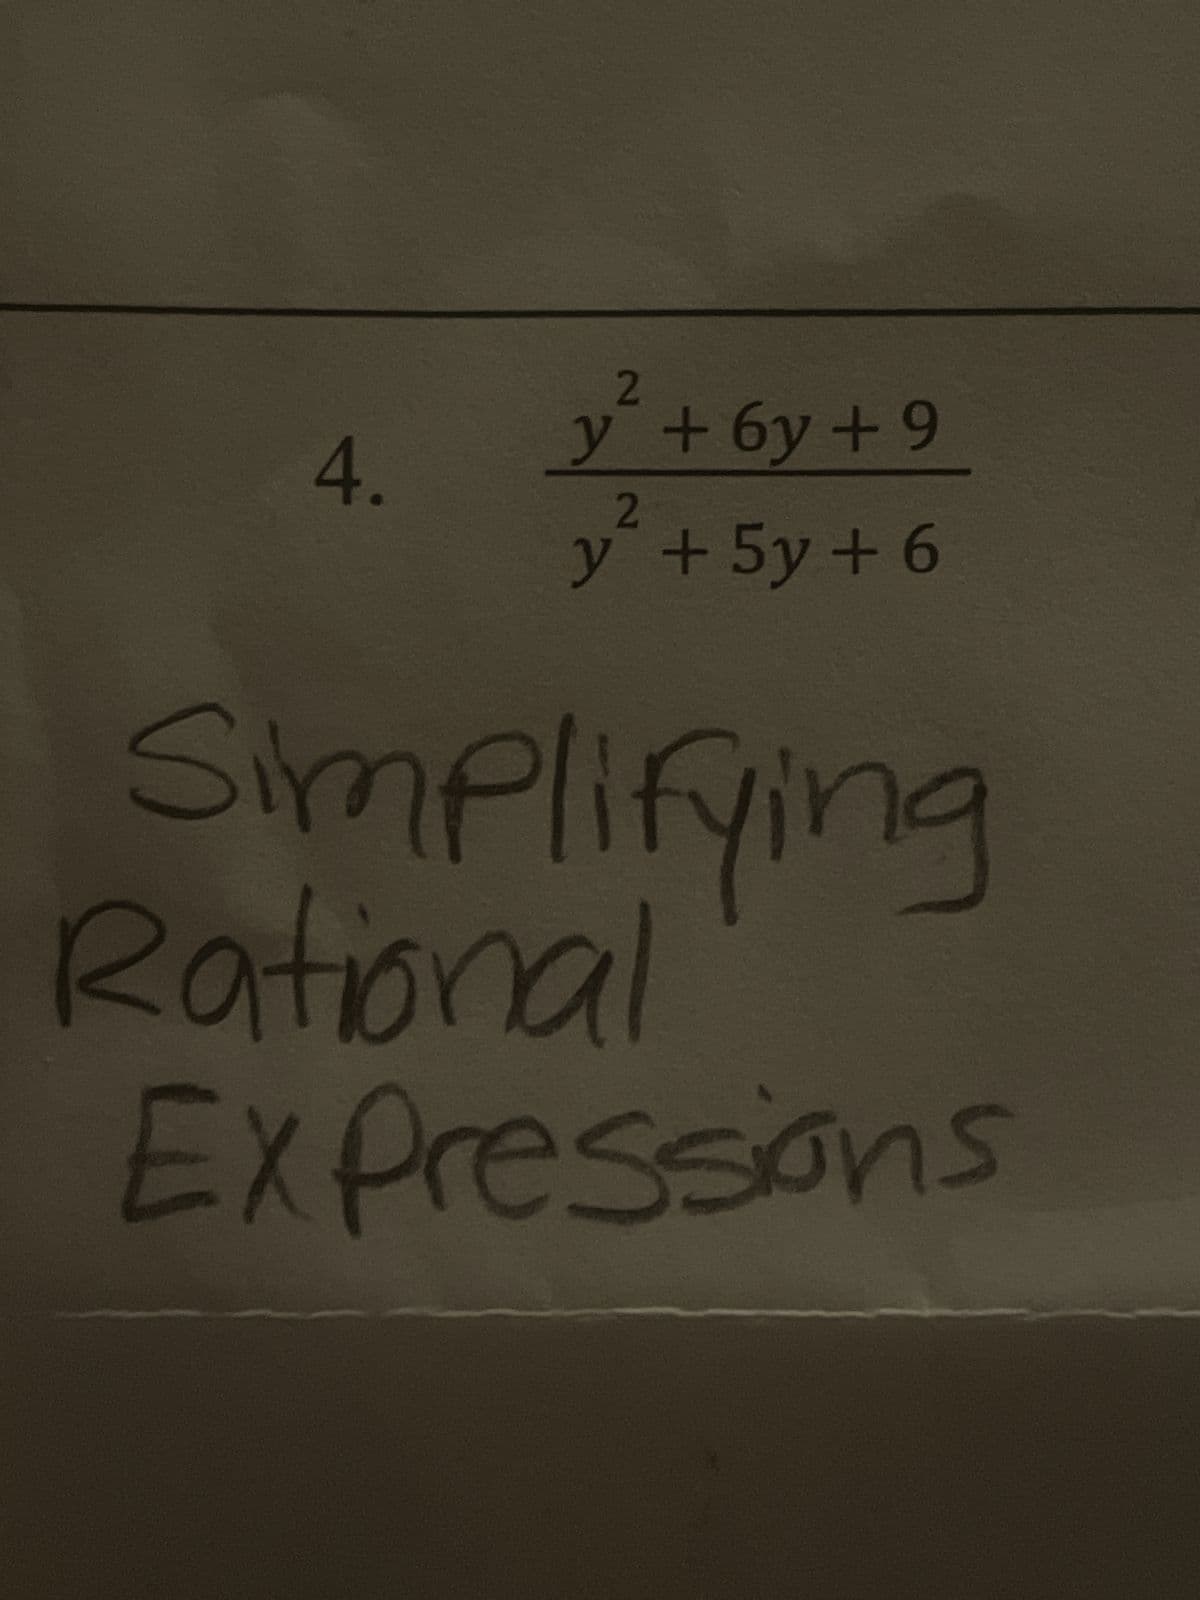 4.
2
y + 6y +9
2
y + 5y + 6
Simplifying
Rational
Expressions